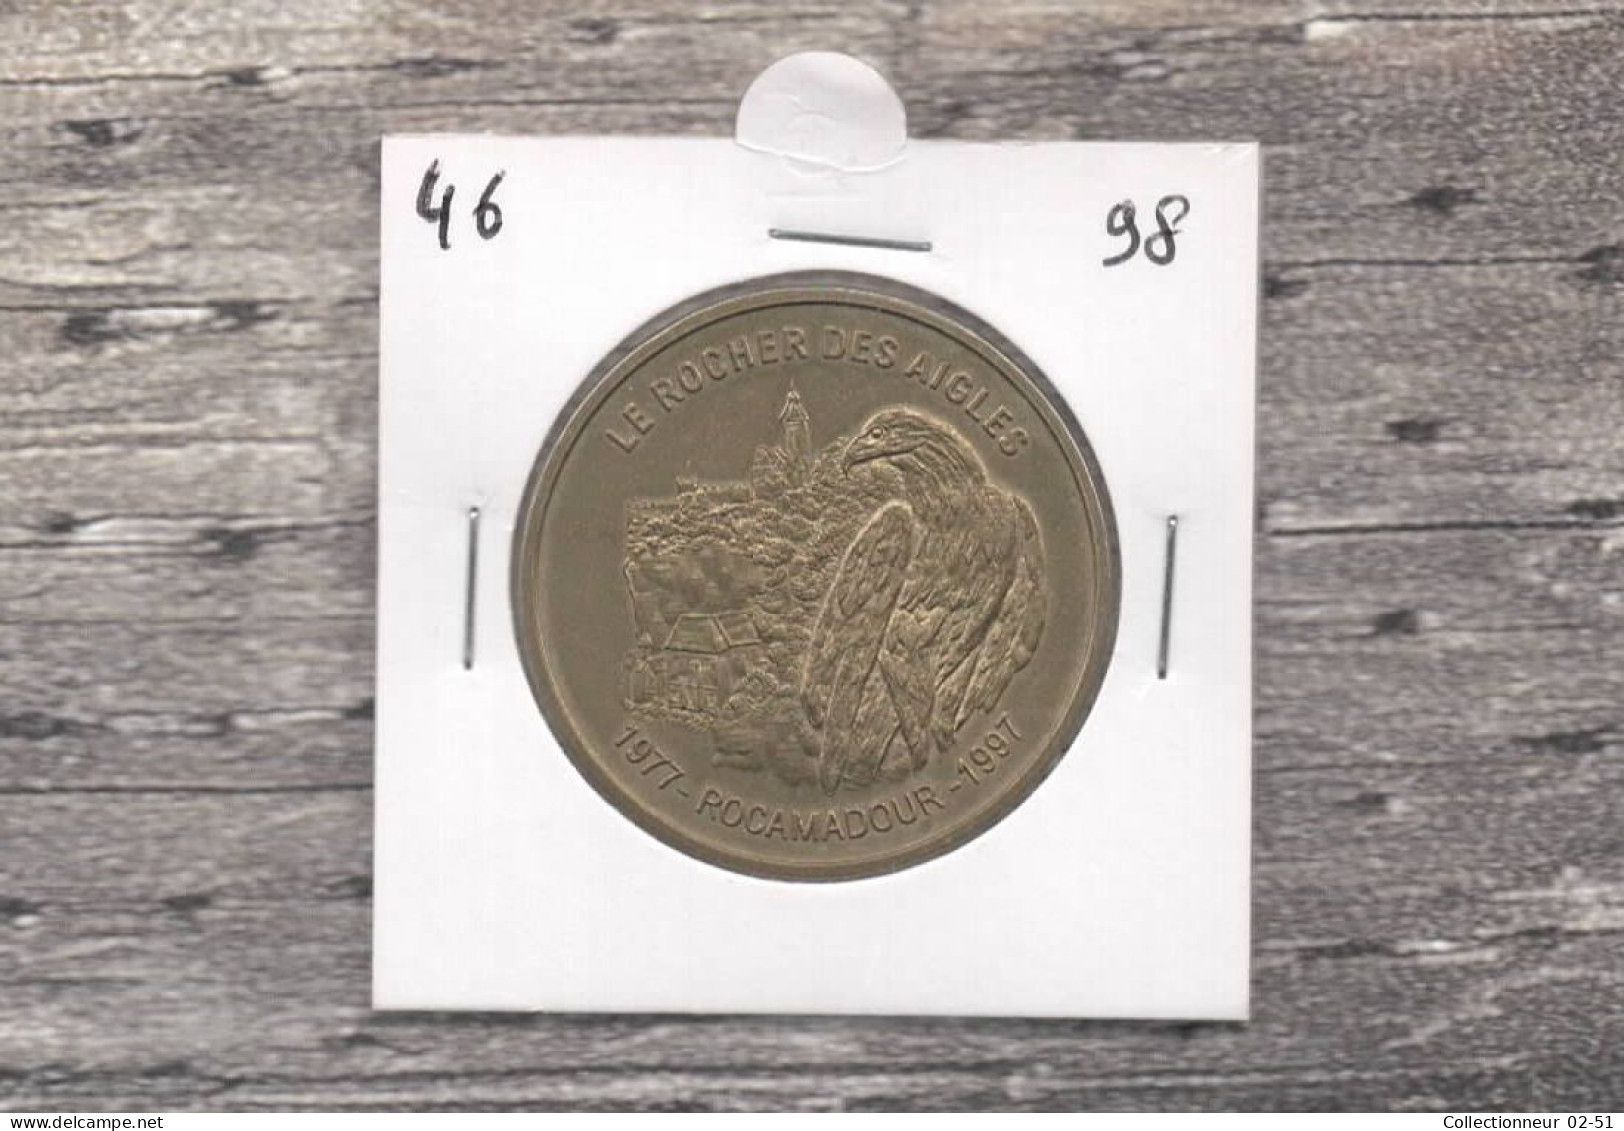 Monnaie De Paris : Le Rocher Des Aigles - 1998 - Zonder Datum